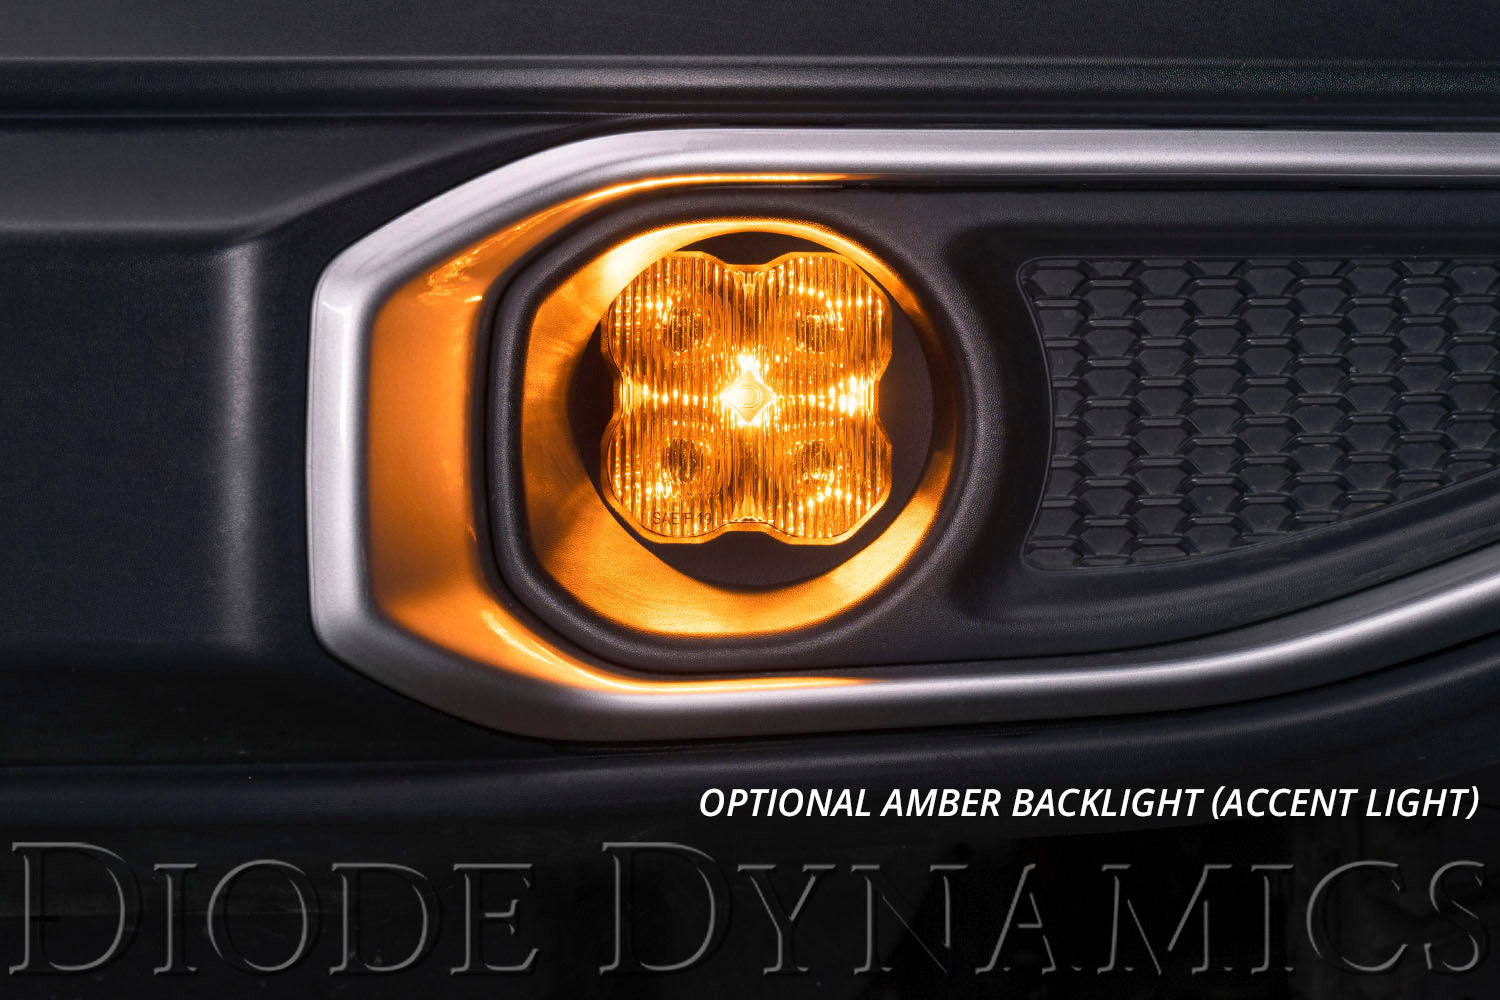 SS3 LED Fog Light Kit for 2011-2014 Lexus IS350 White SAE/DOT Driving Pro Diode Dynamics